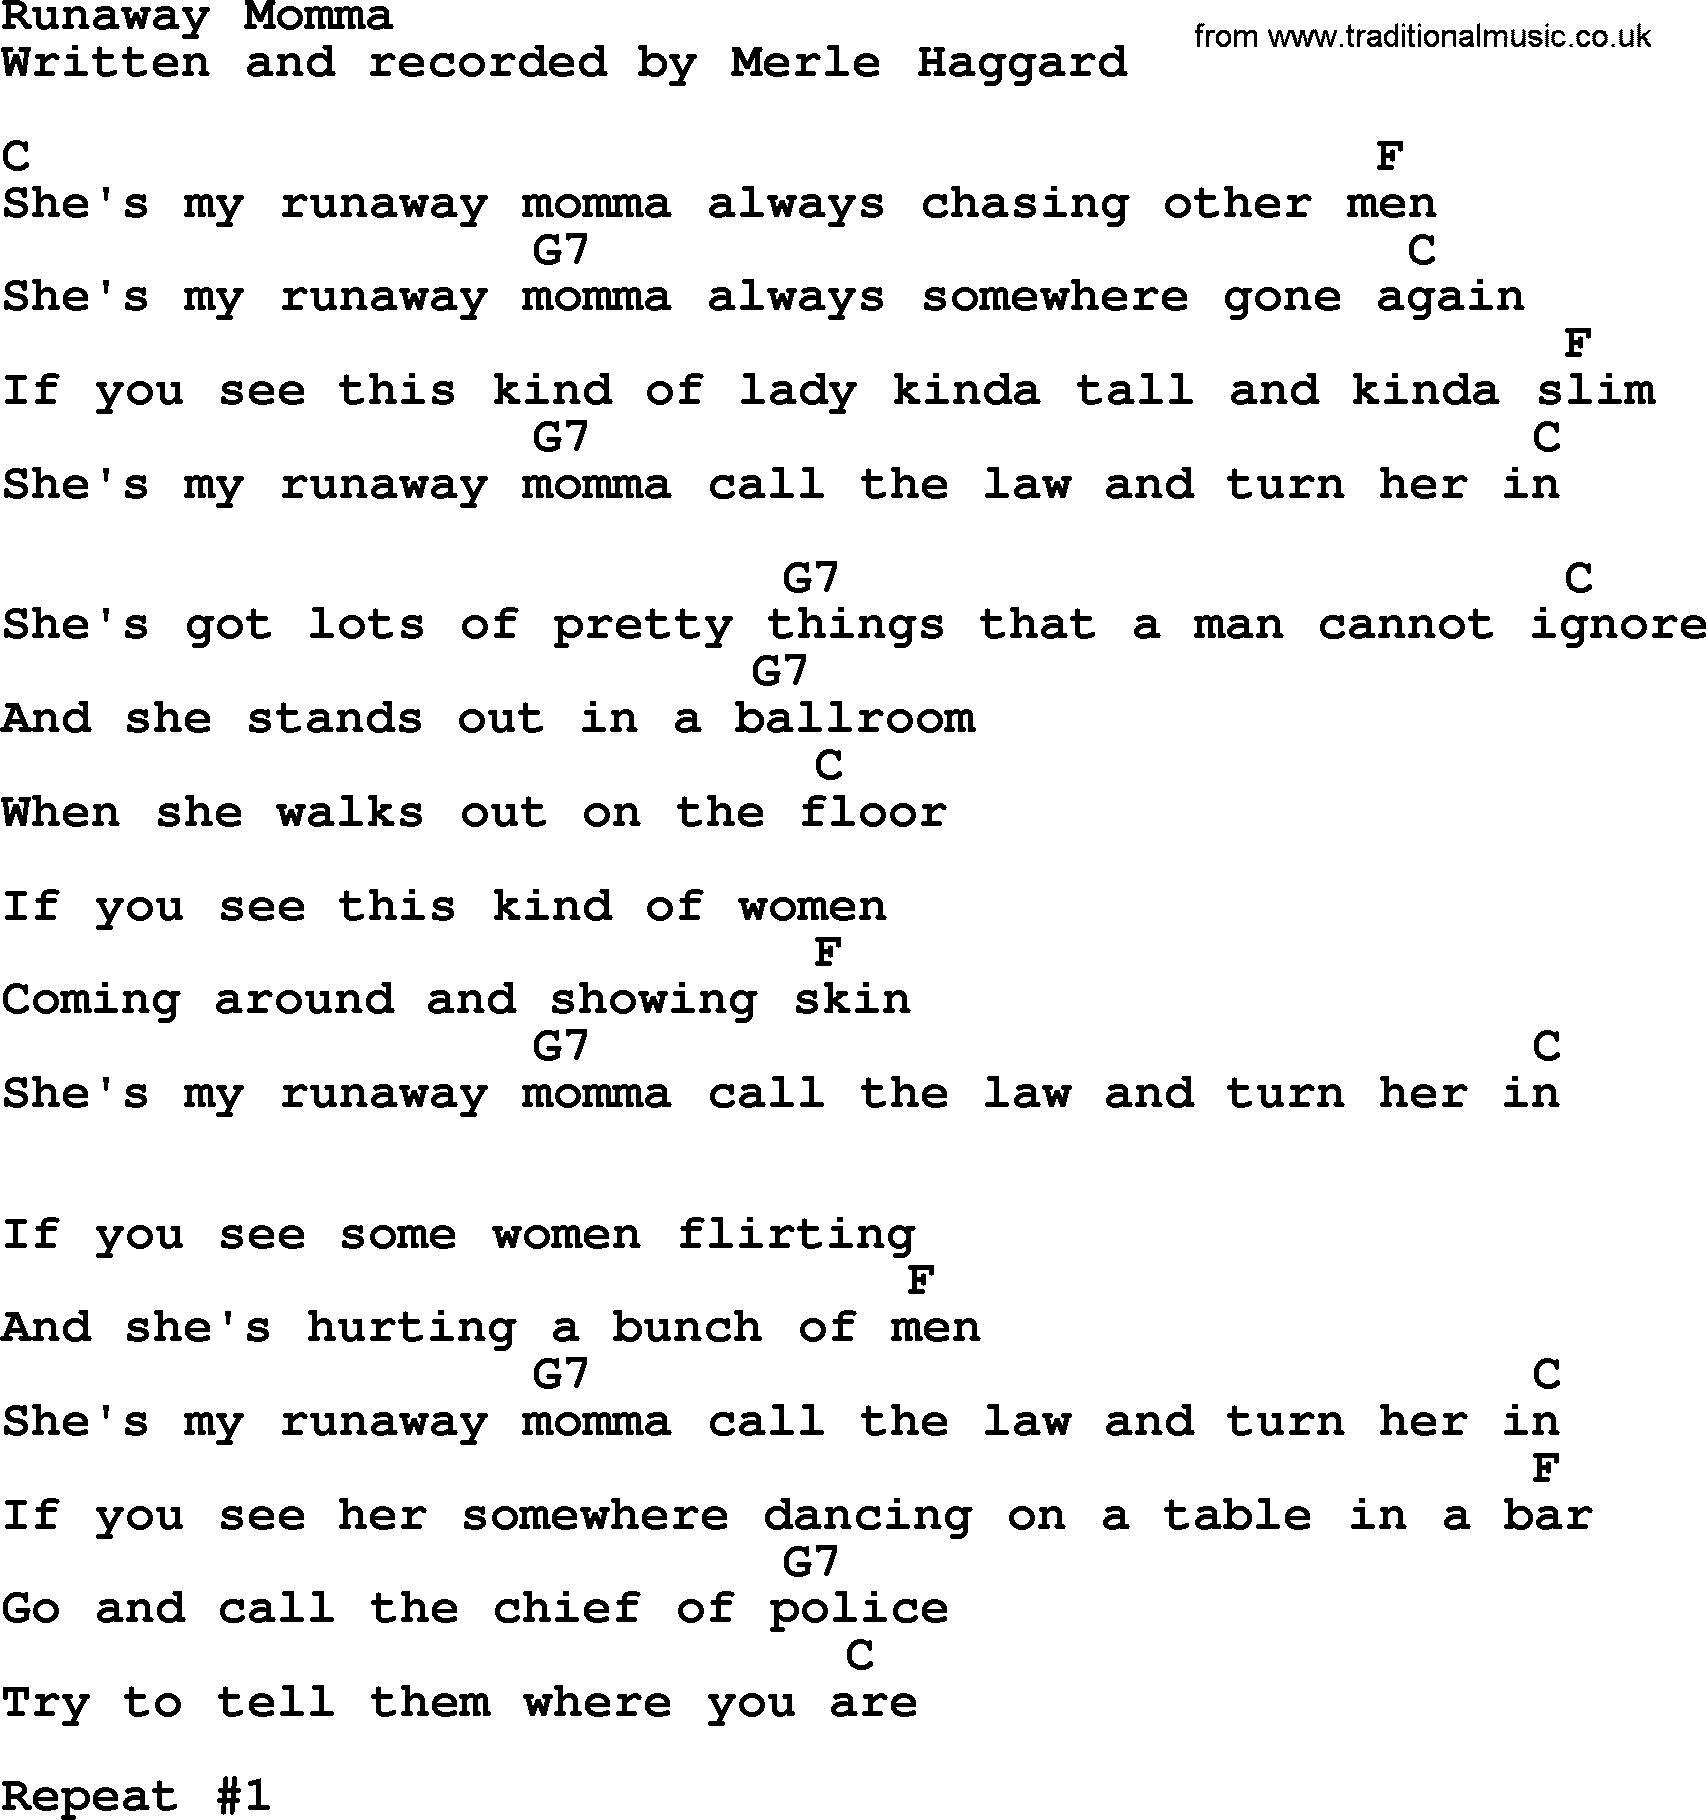 Merle Haggard song: Runaway Momma, lyrics and chords